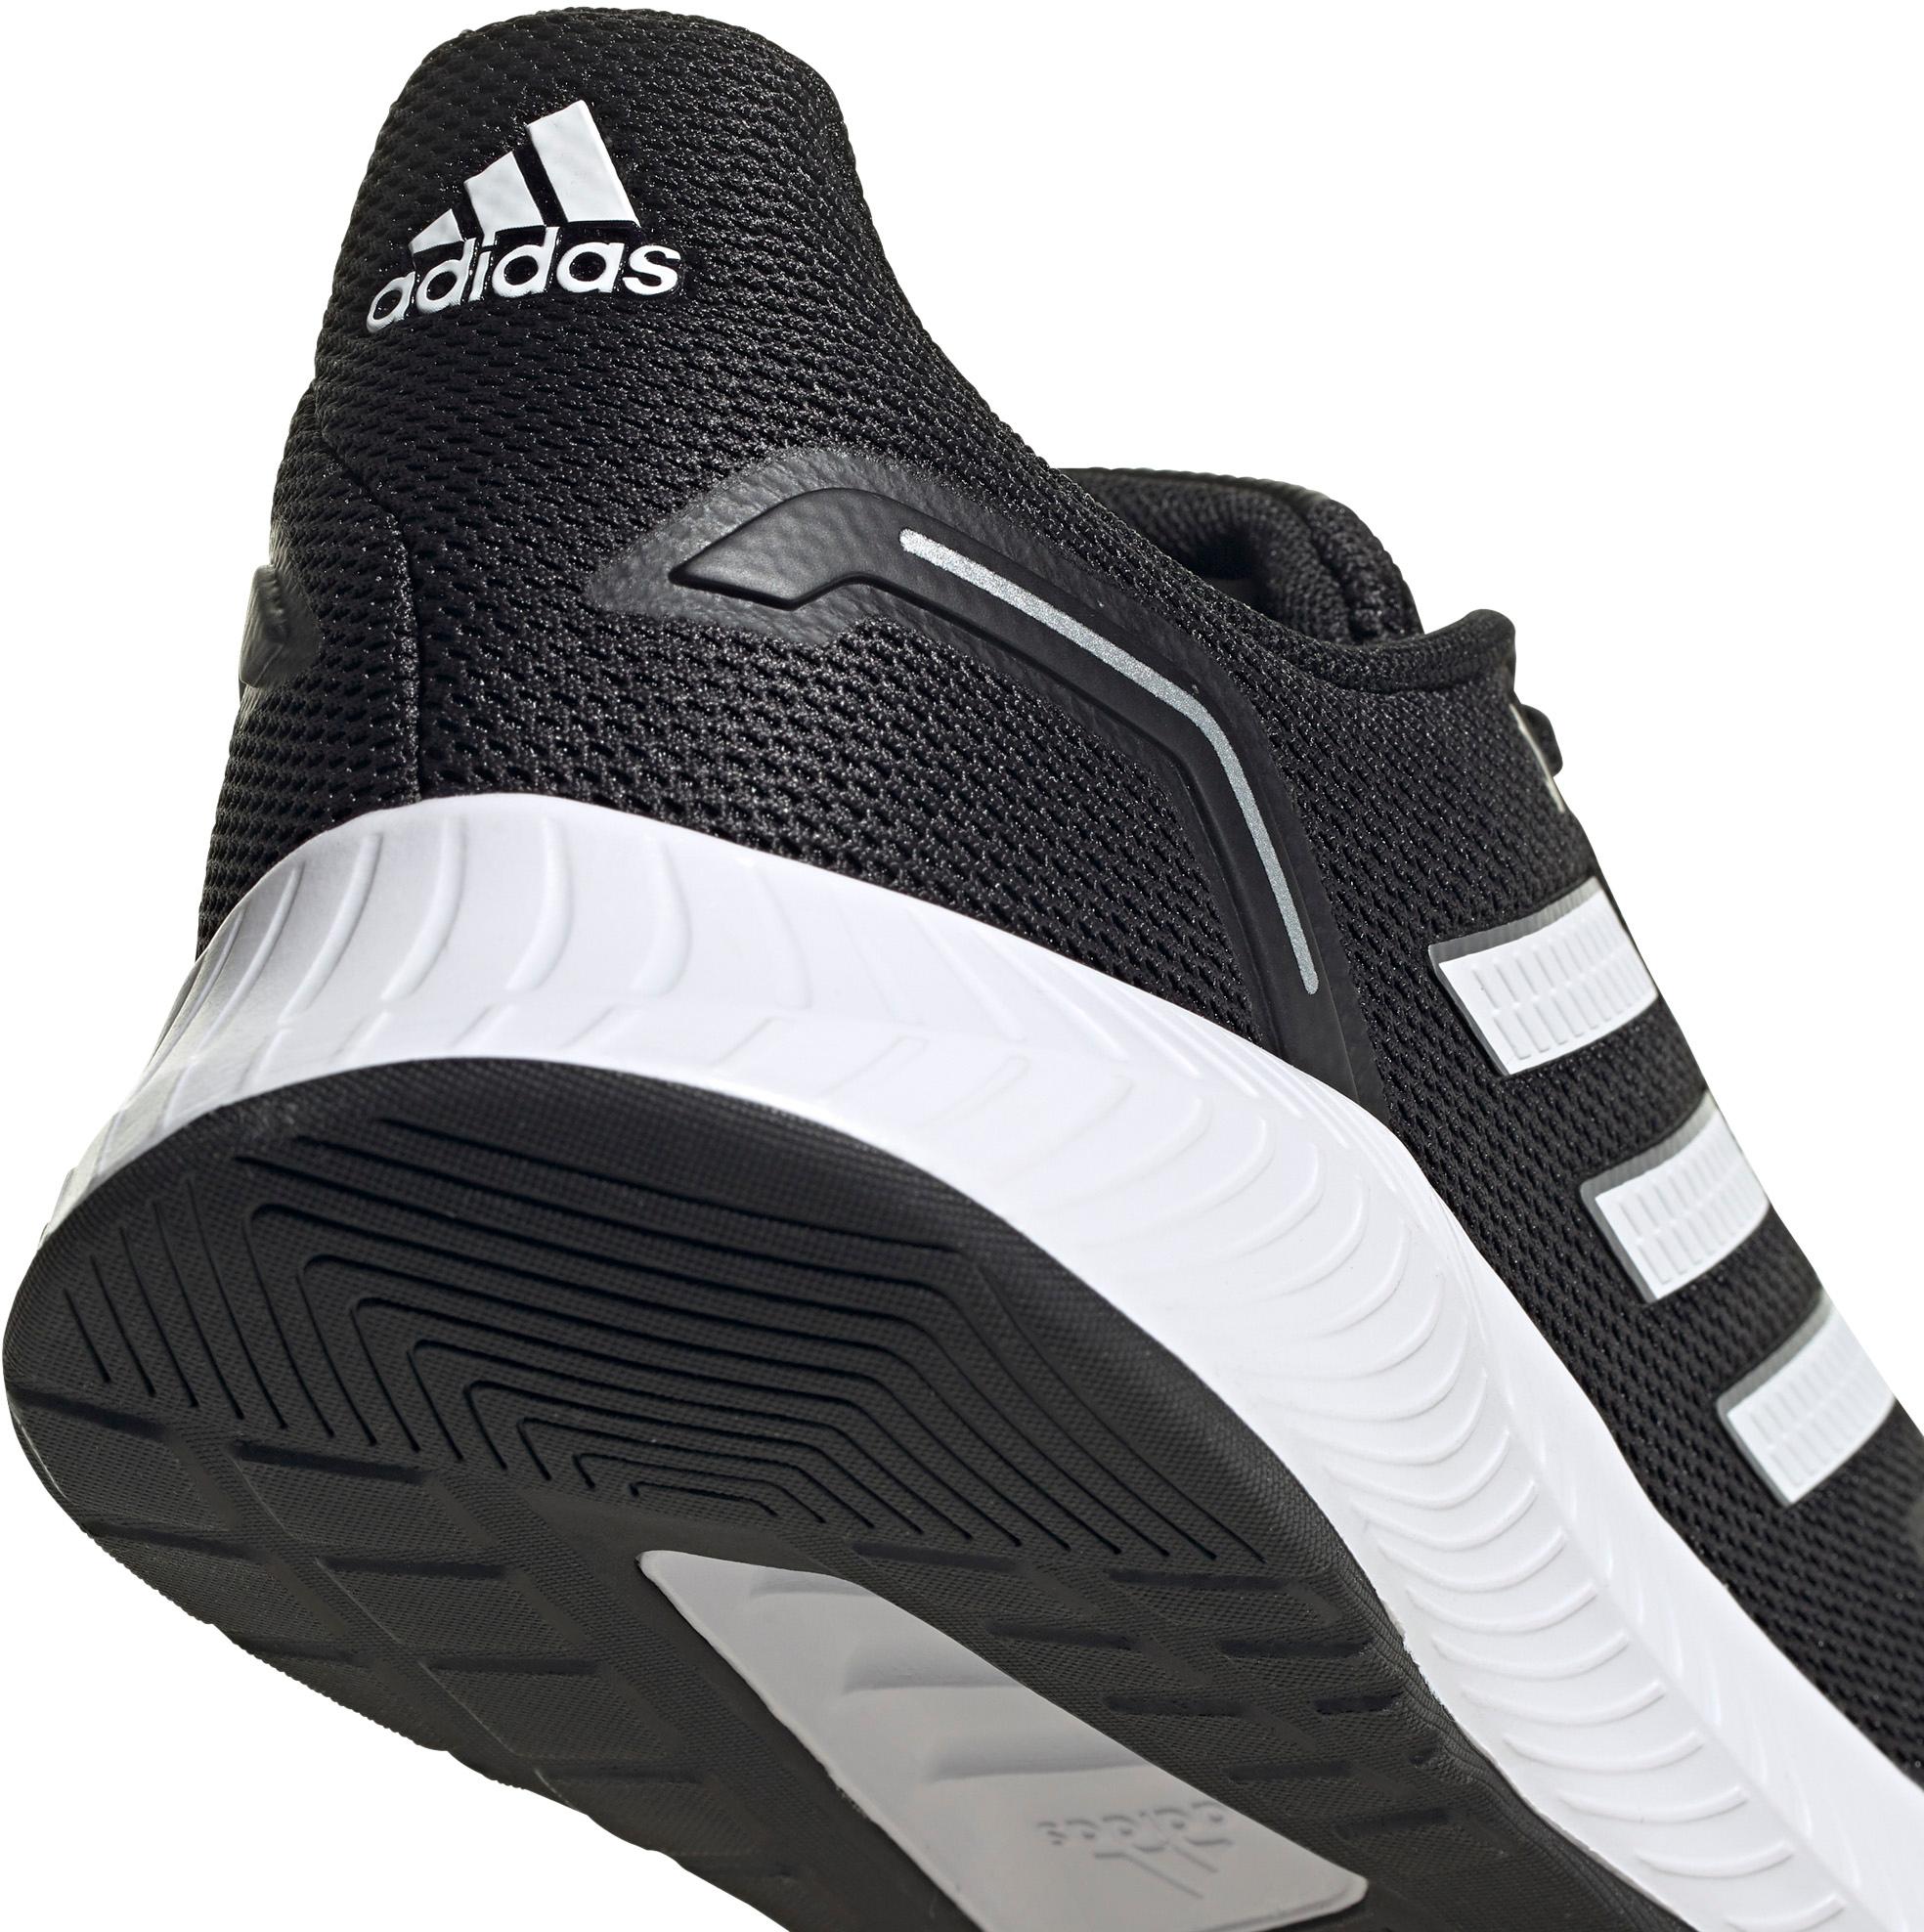 Adidas 2.0 Laufschuhe Herren black-ftwr white-grey six Online Shop SportScheck kaufen